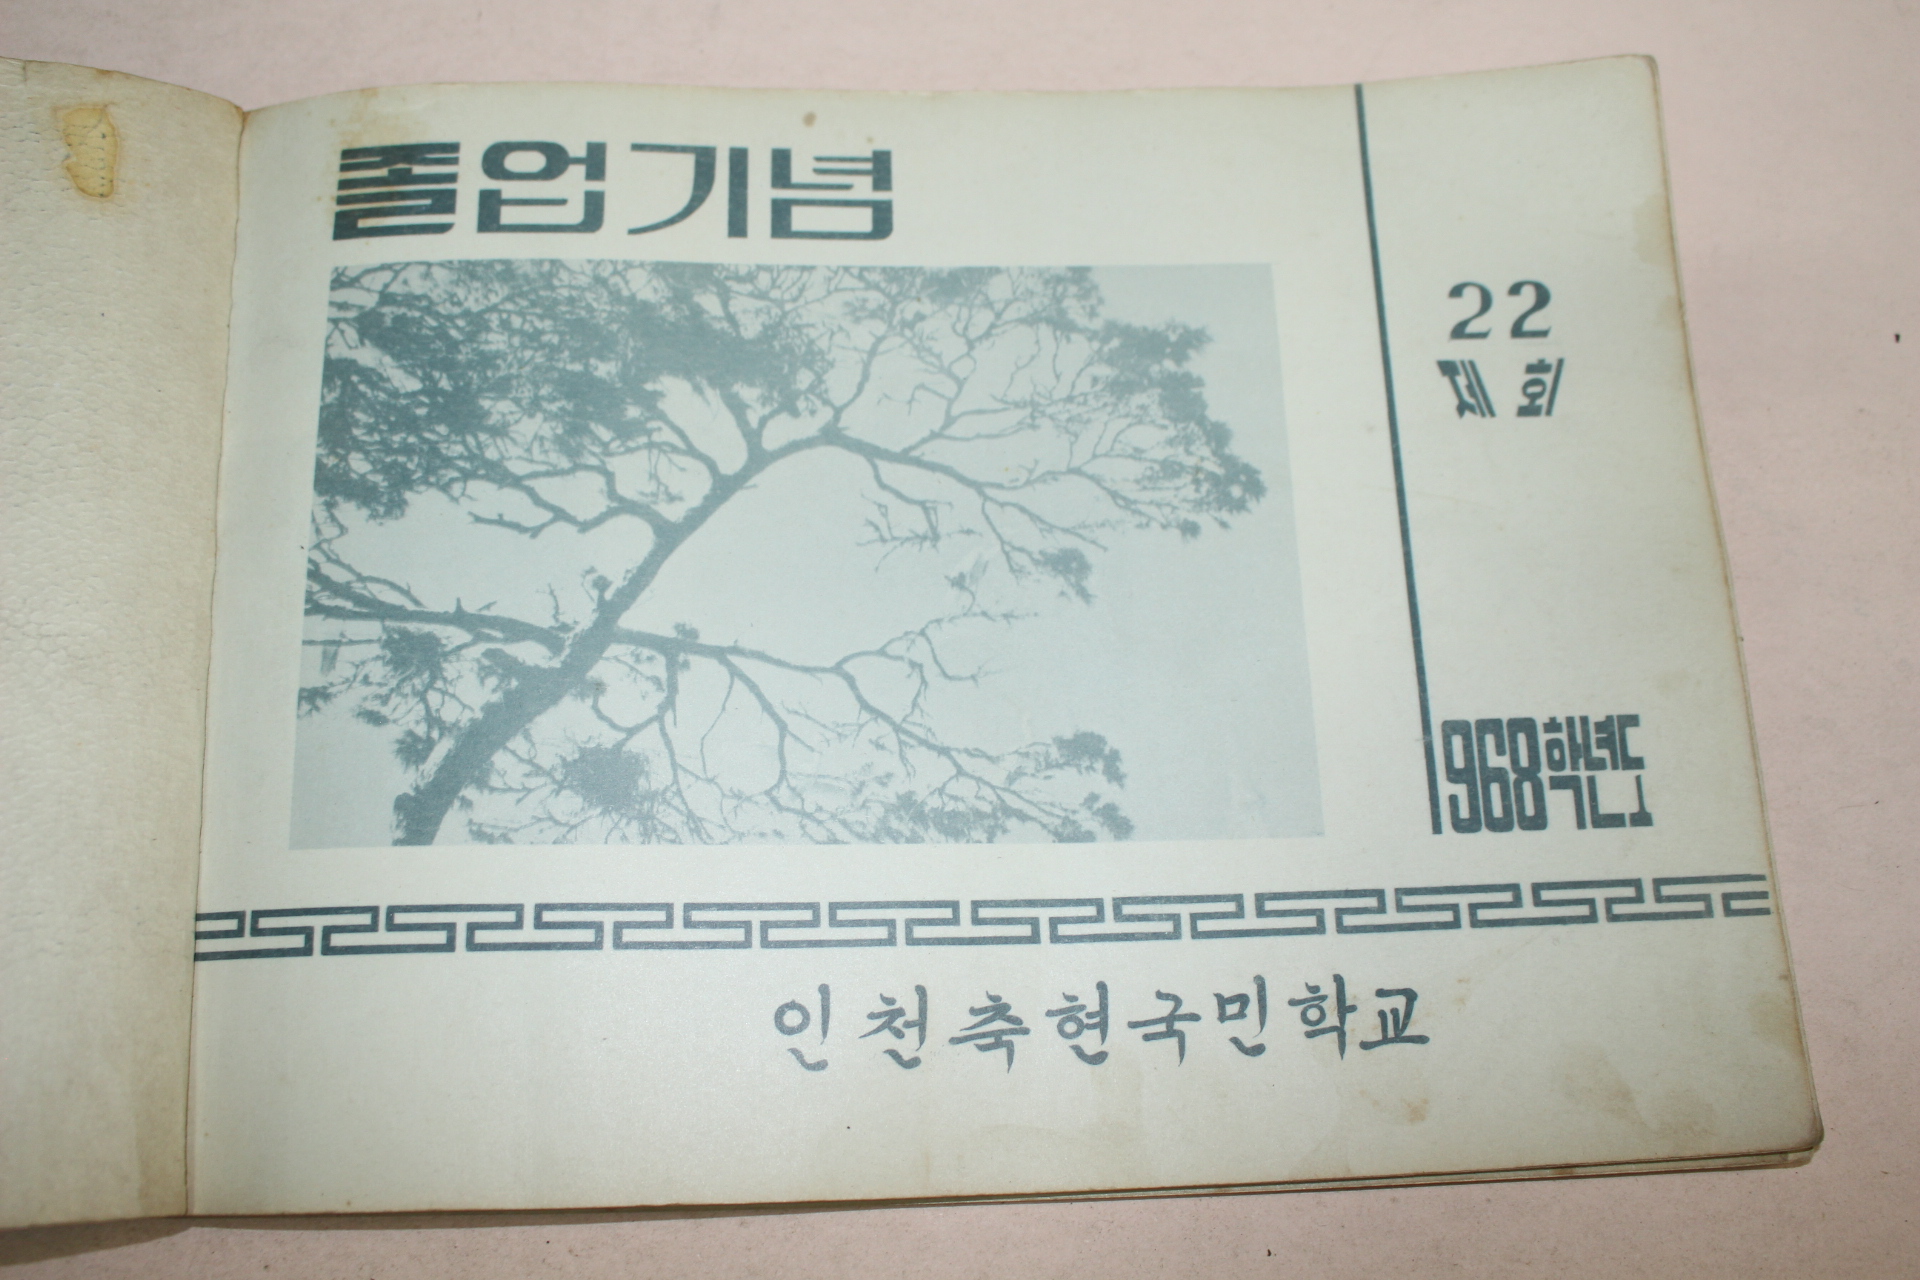 1968년 인천축현국민학교 제22회 졸업기념 앨범